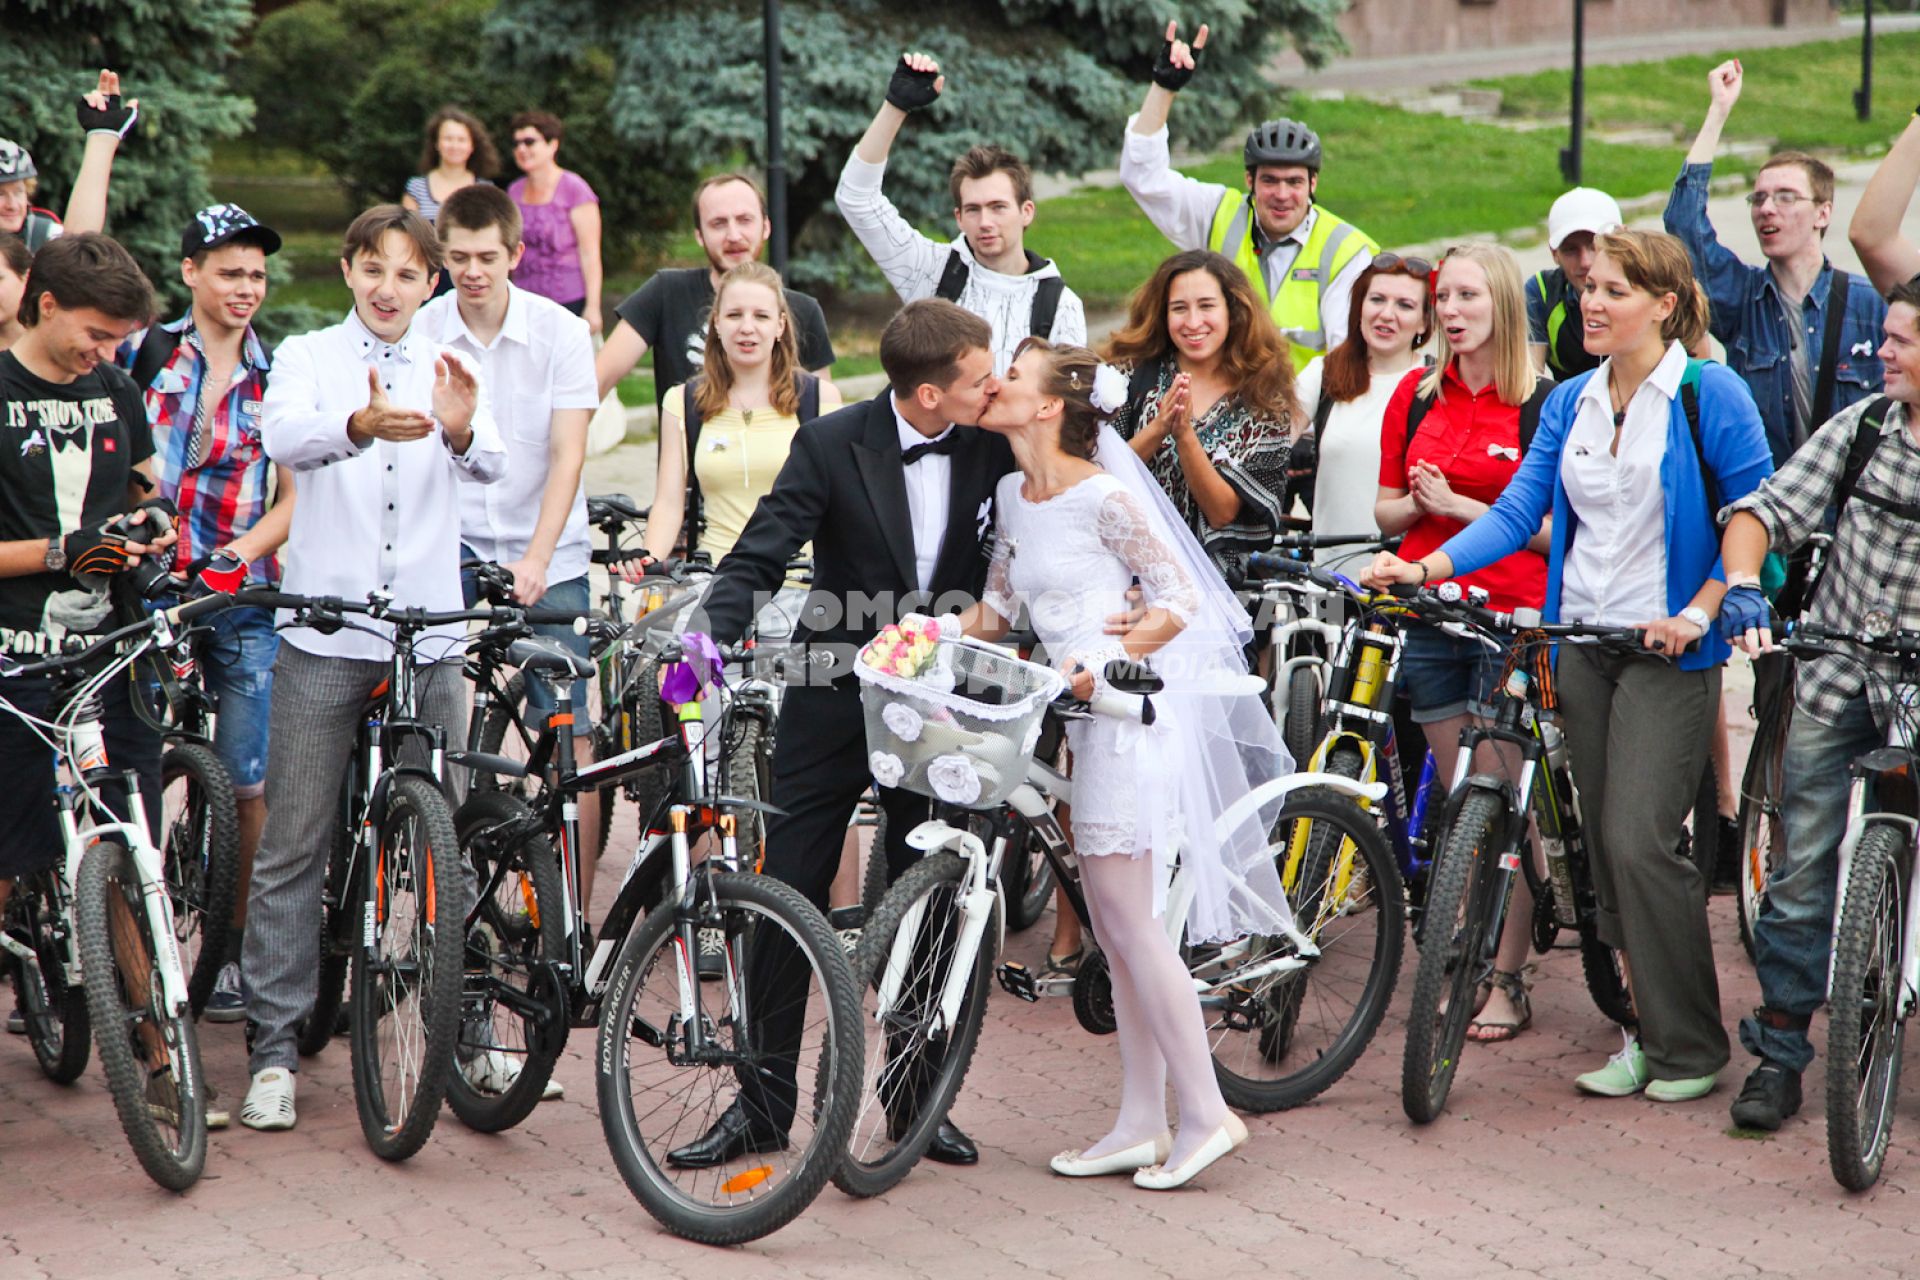 Свадьба велосипедистов. Молодые решили пожениться не сходя с велосипедов.